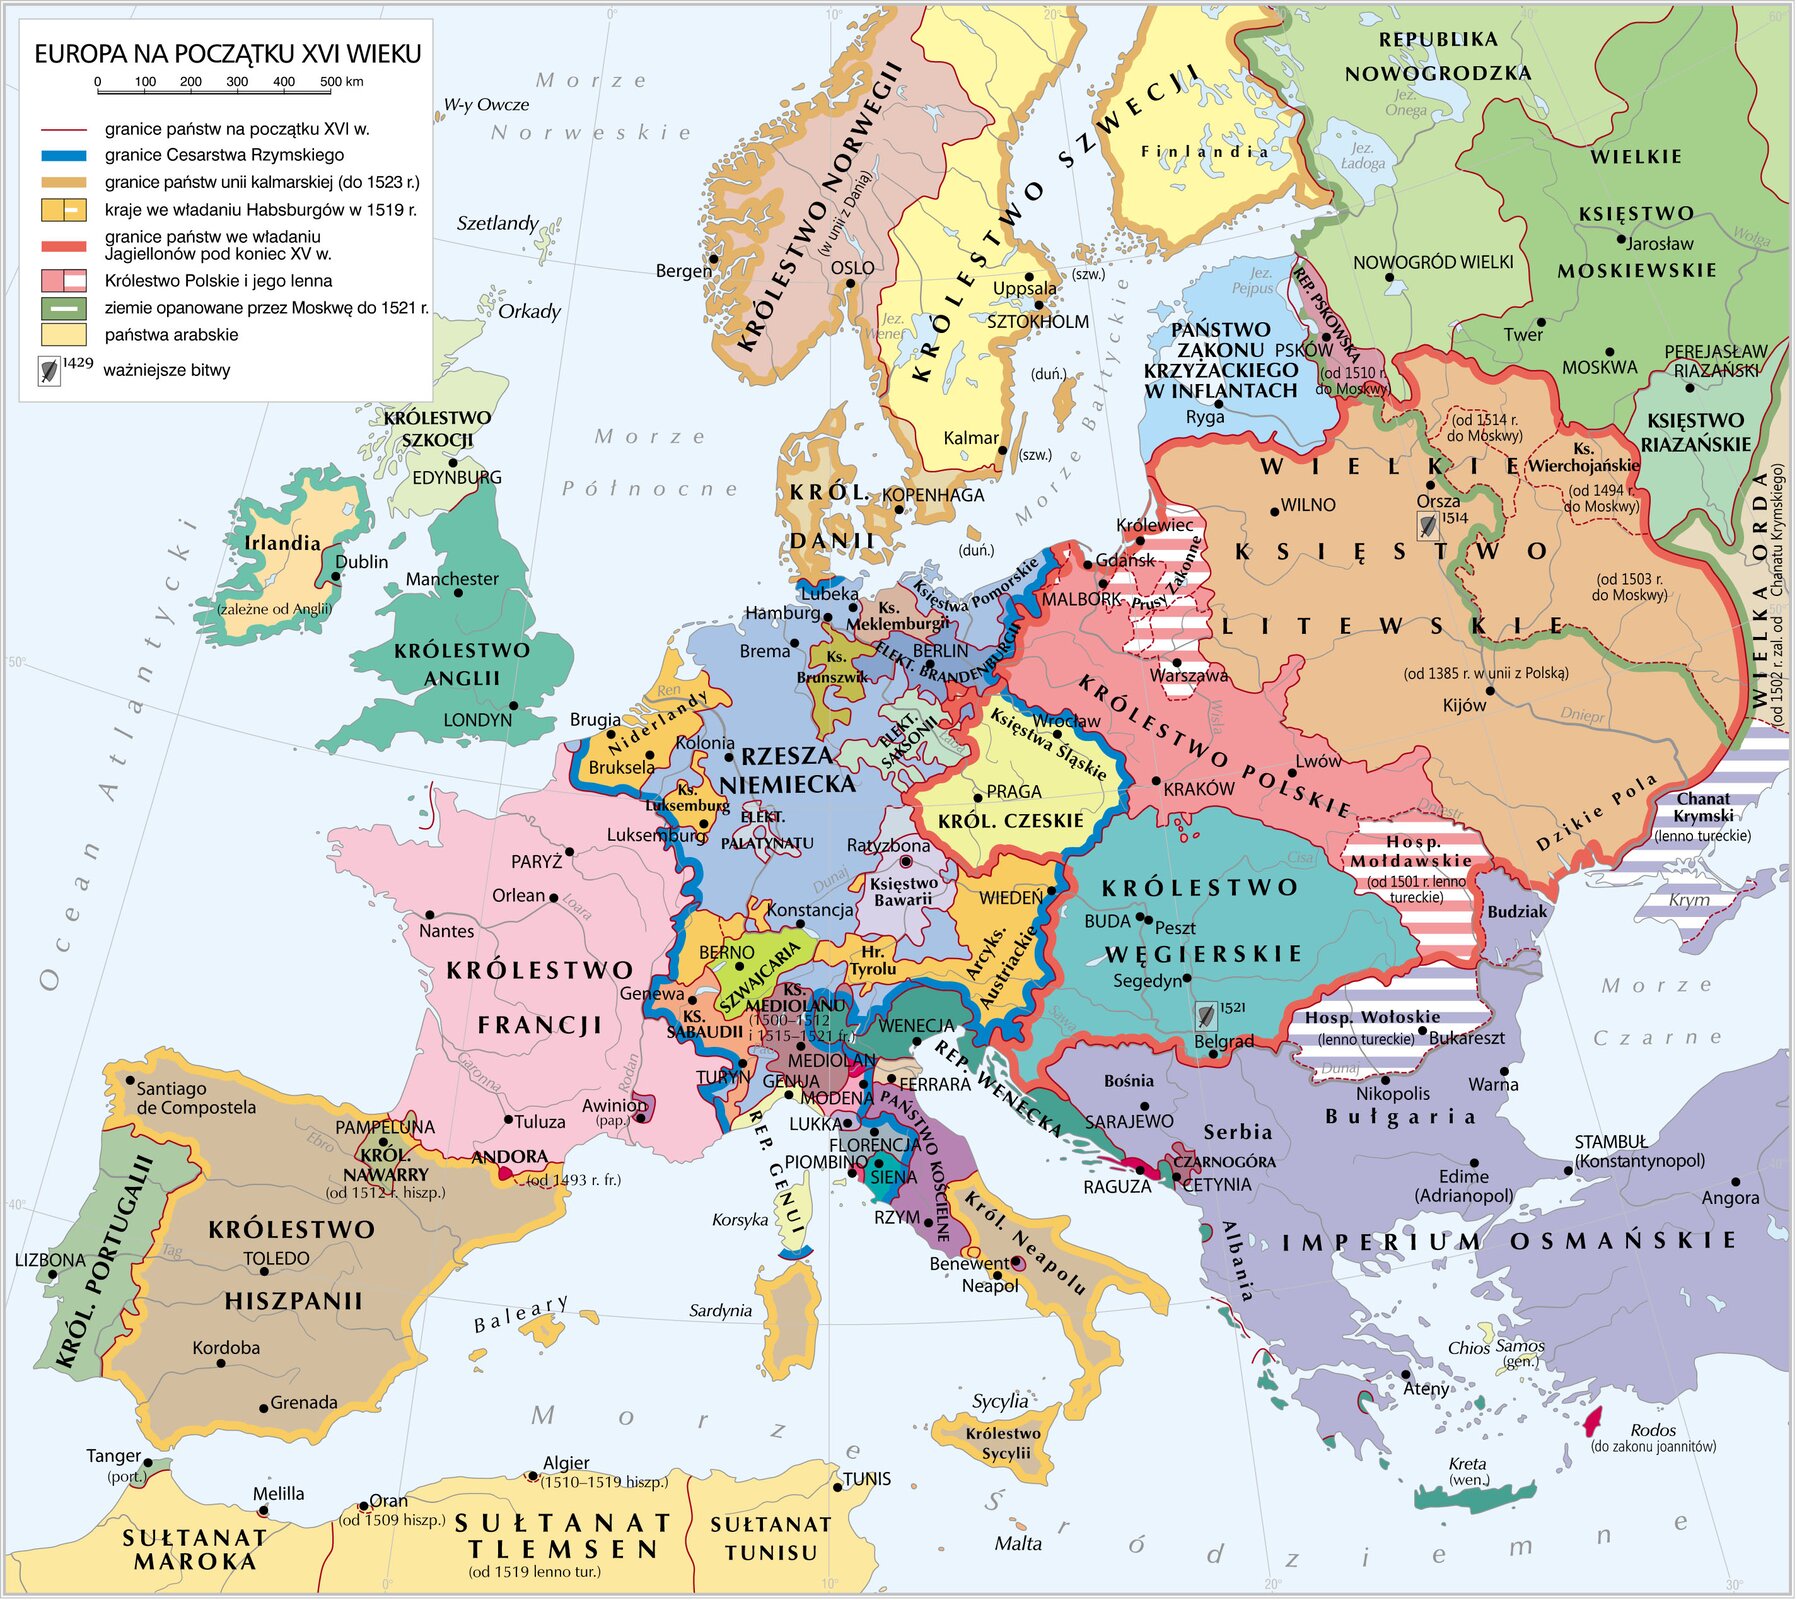 Europa na początku XVI w. Europa na początku XVI w. Źródło: Krystian Chariza i zespół, licencja: CC BY 4.0.